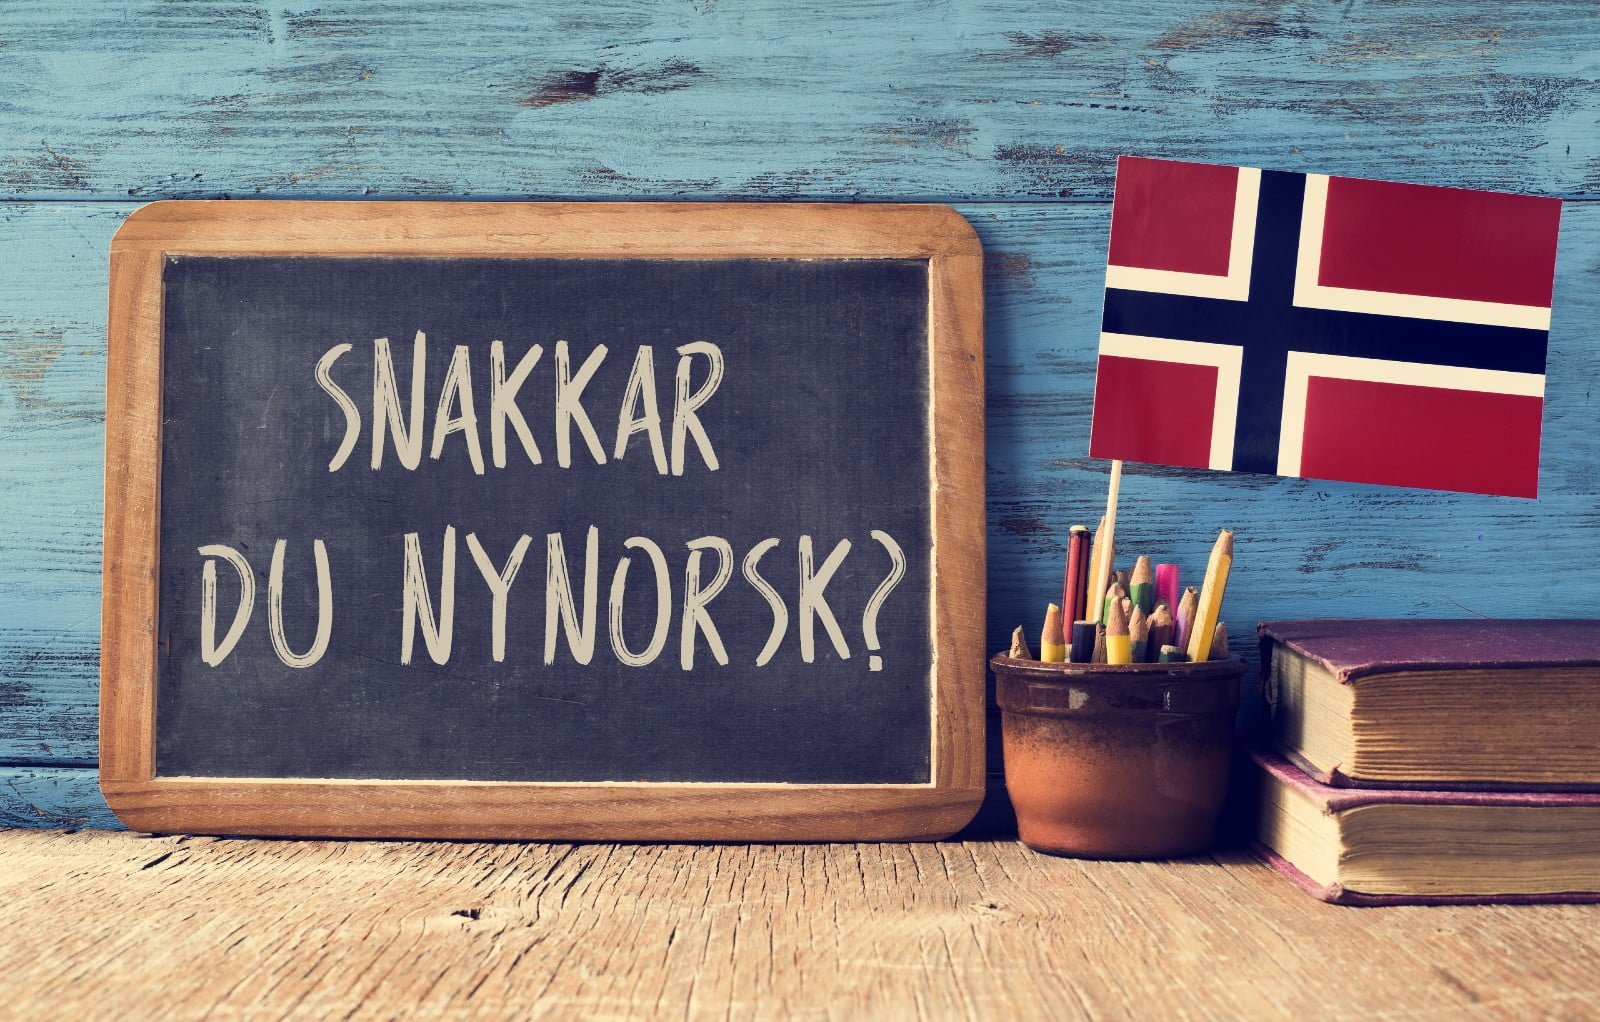 Nynorsk in Norwegian schools